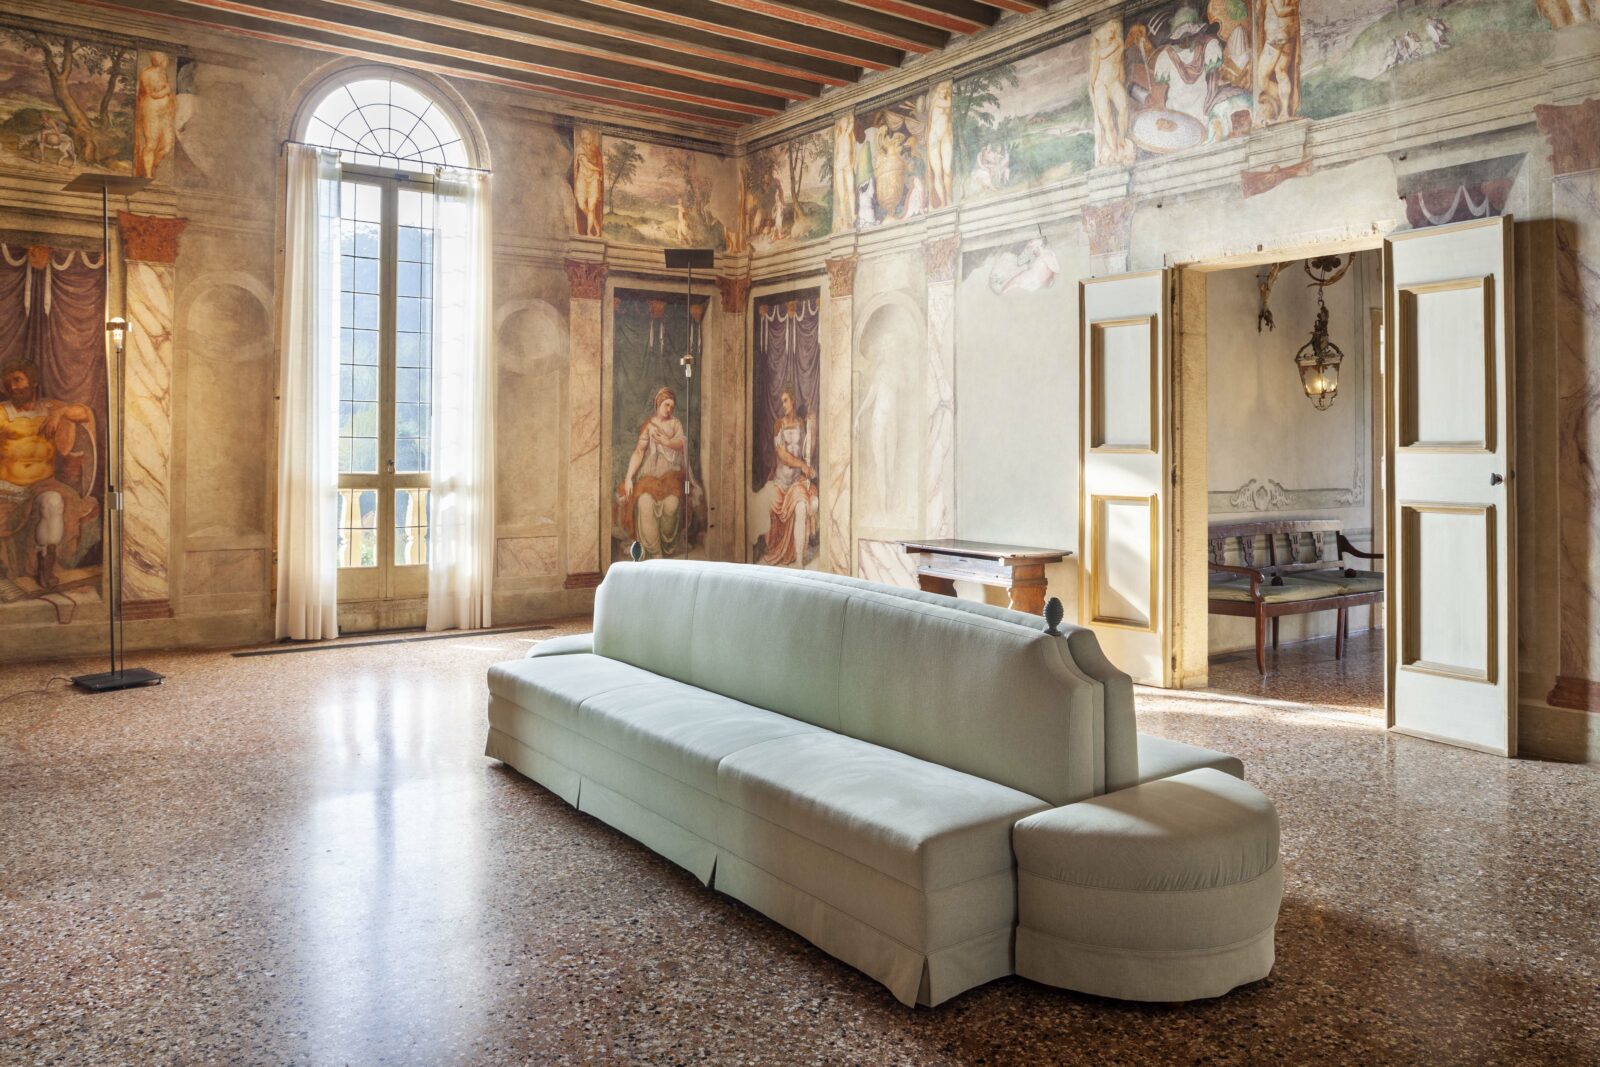 Hall with frescoes at Villa dei Vescovi